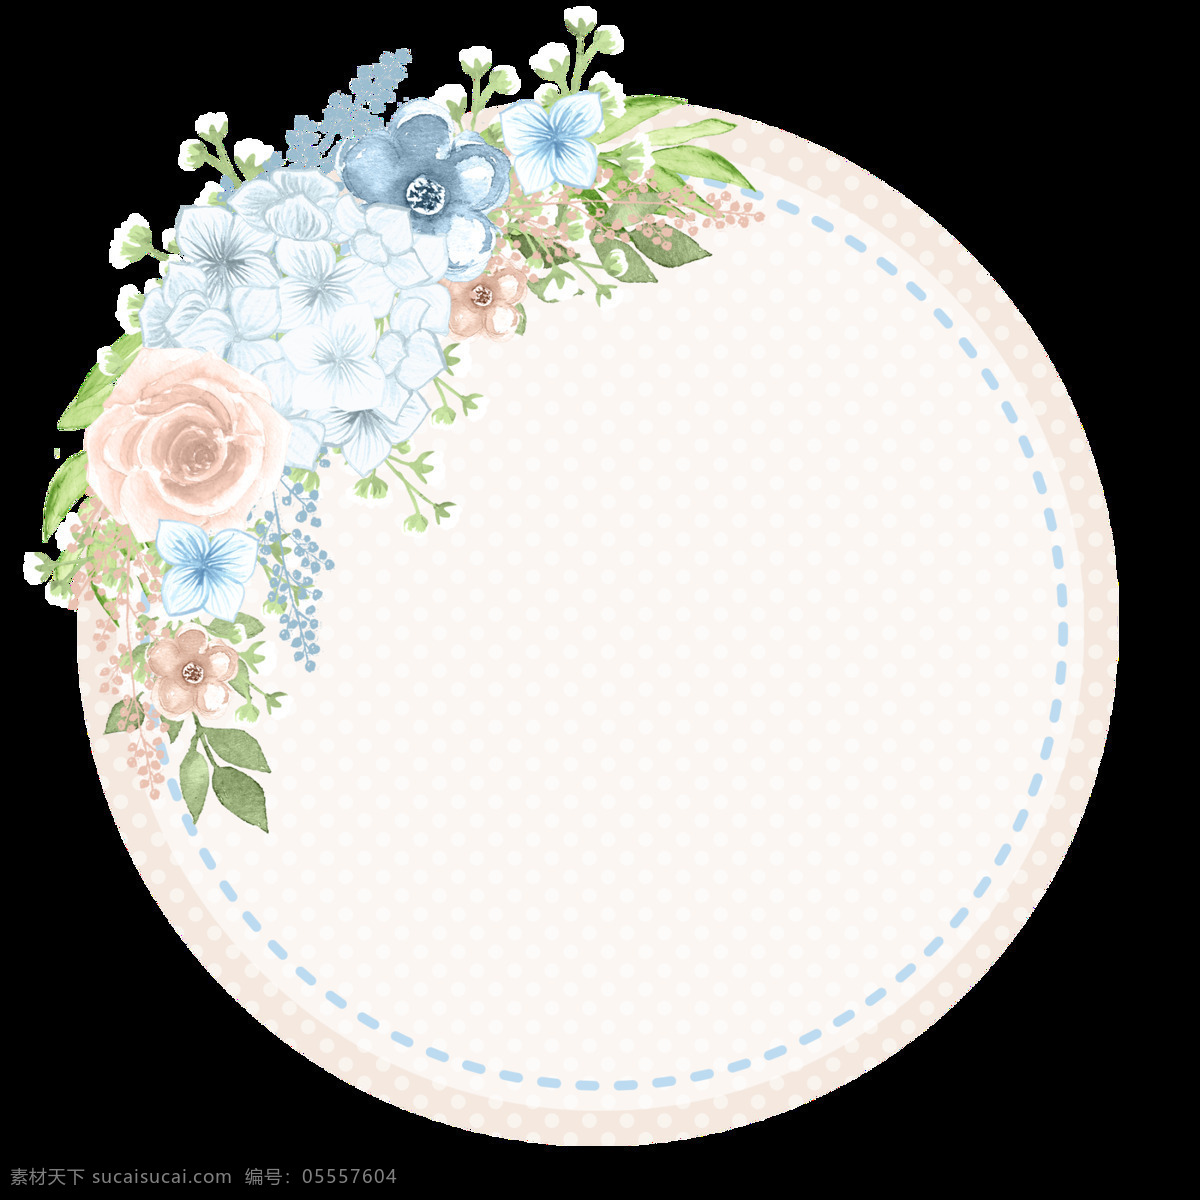 圆形 素雅 花卉 卡通 透明 装饰 设计素材 背景素材